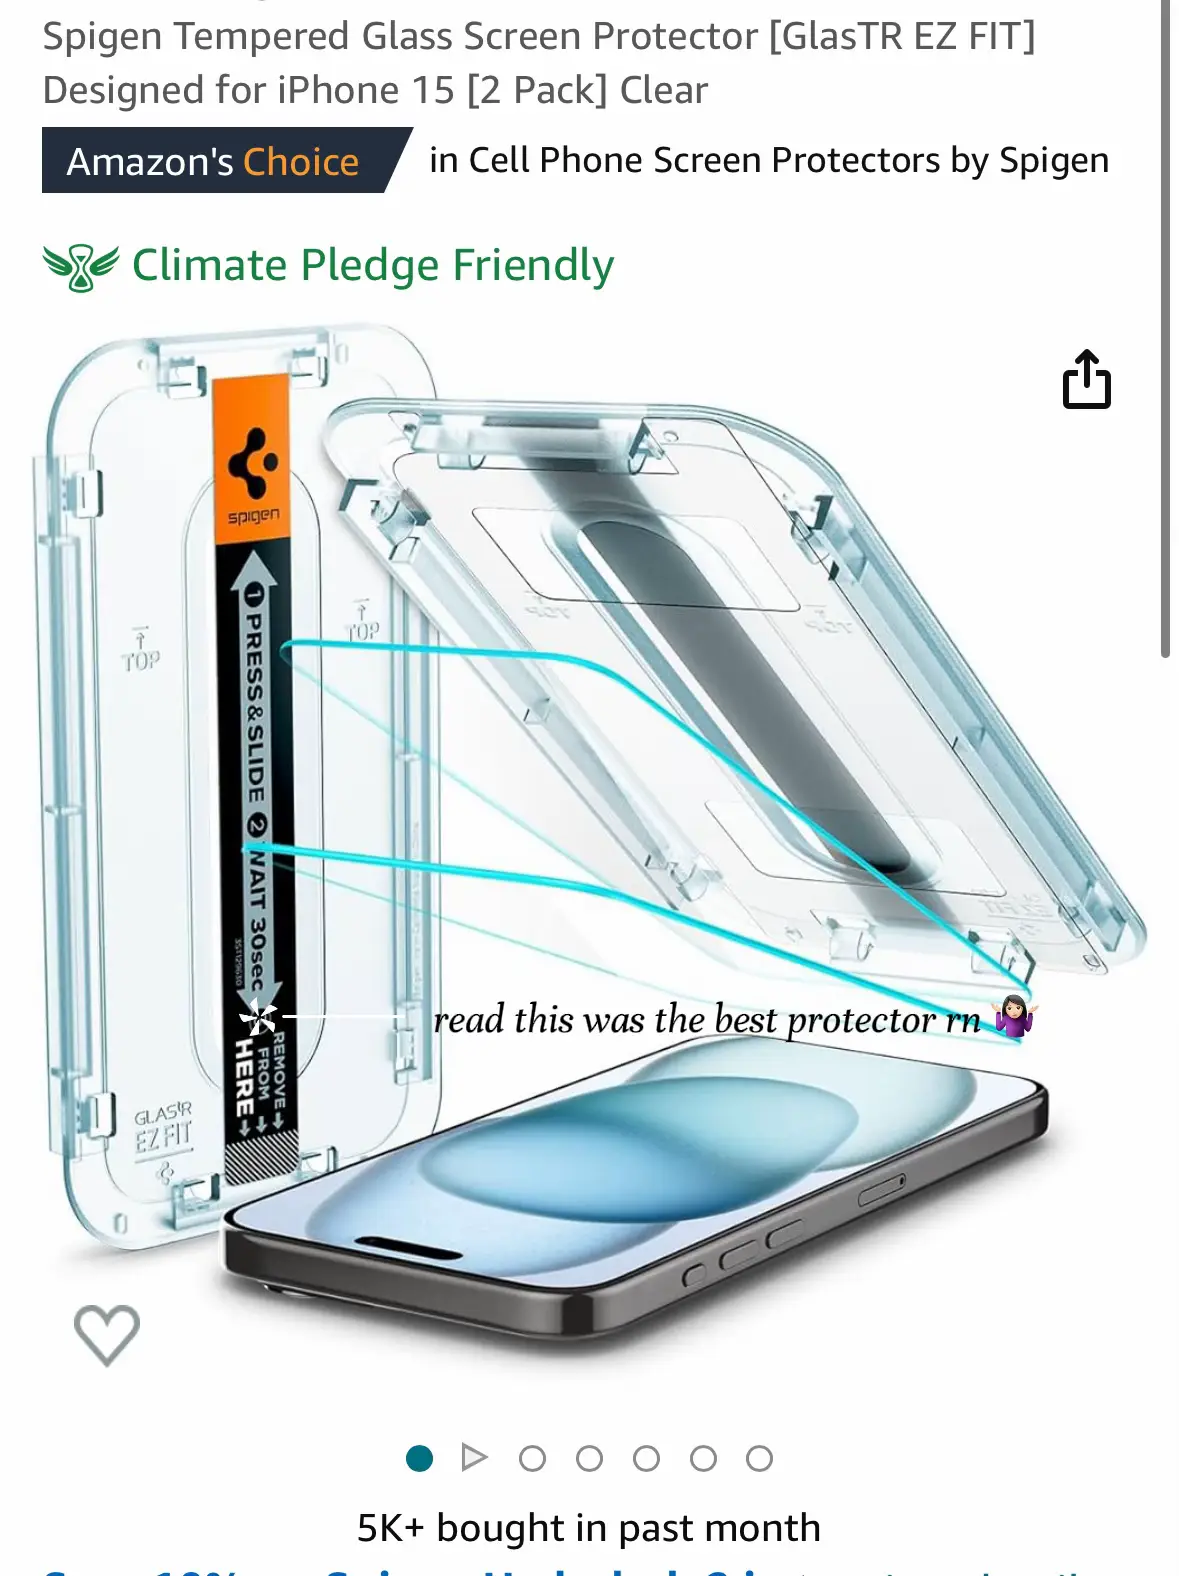 Vidrio Templado Spigen Glas.tr ez Fit 2-pack iPhone 15 Pro Privacy - Shop